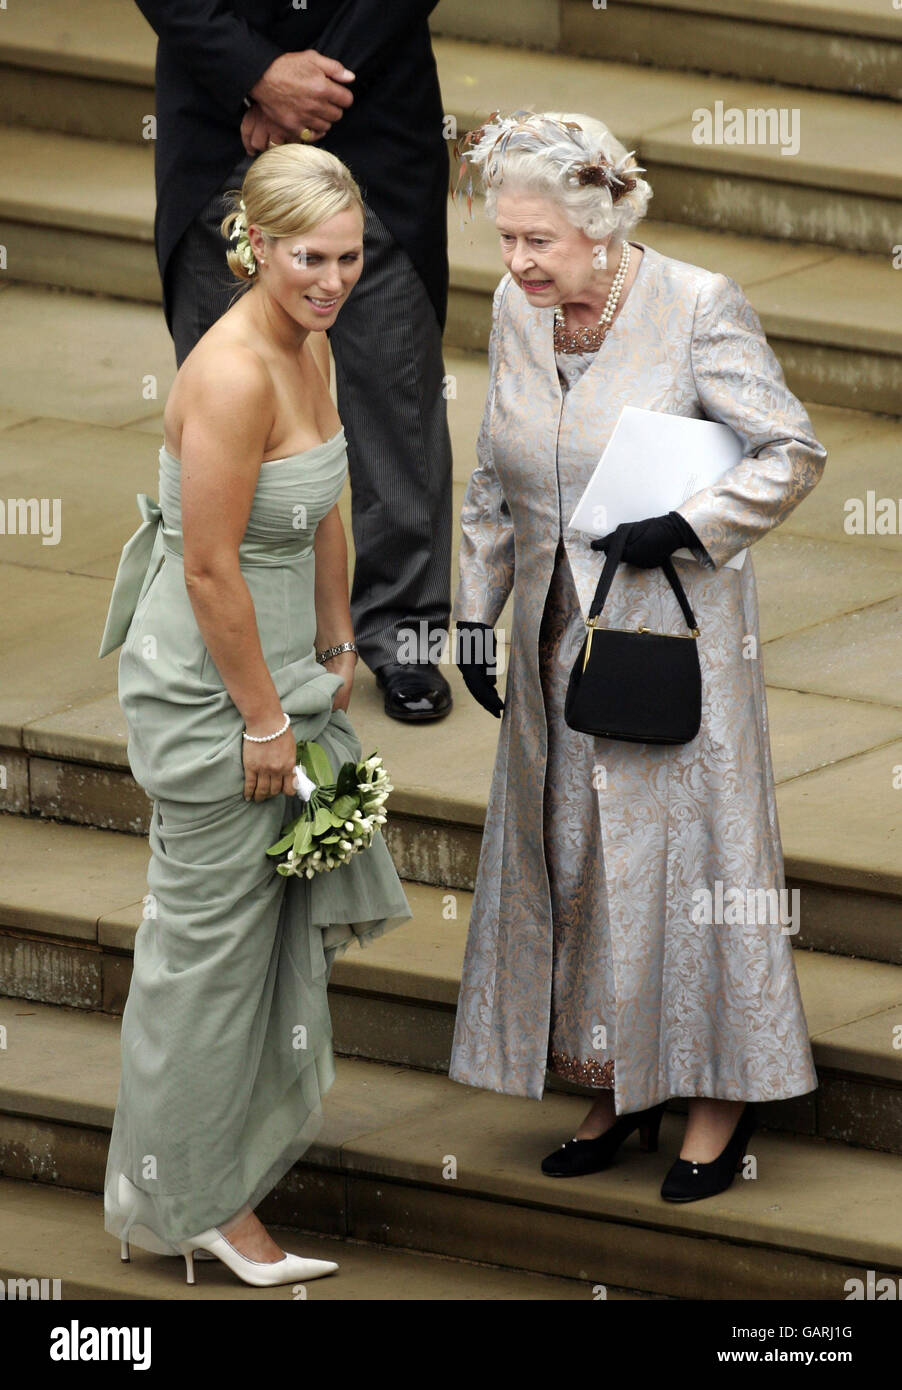 La reine Elizabeth II, parle à sa petite-fille Zara Phillips de la cérémonie de mariage de Peter Phillips et Autumn Kelly. Banque D'Images